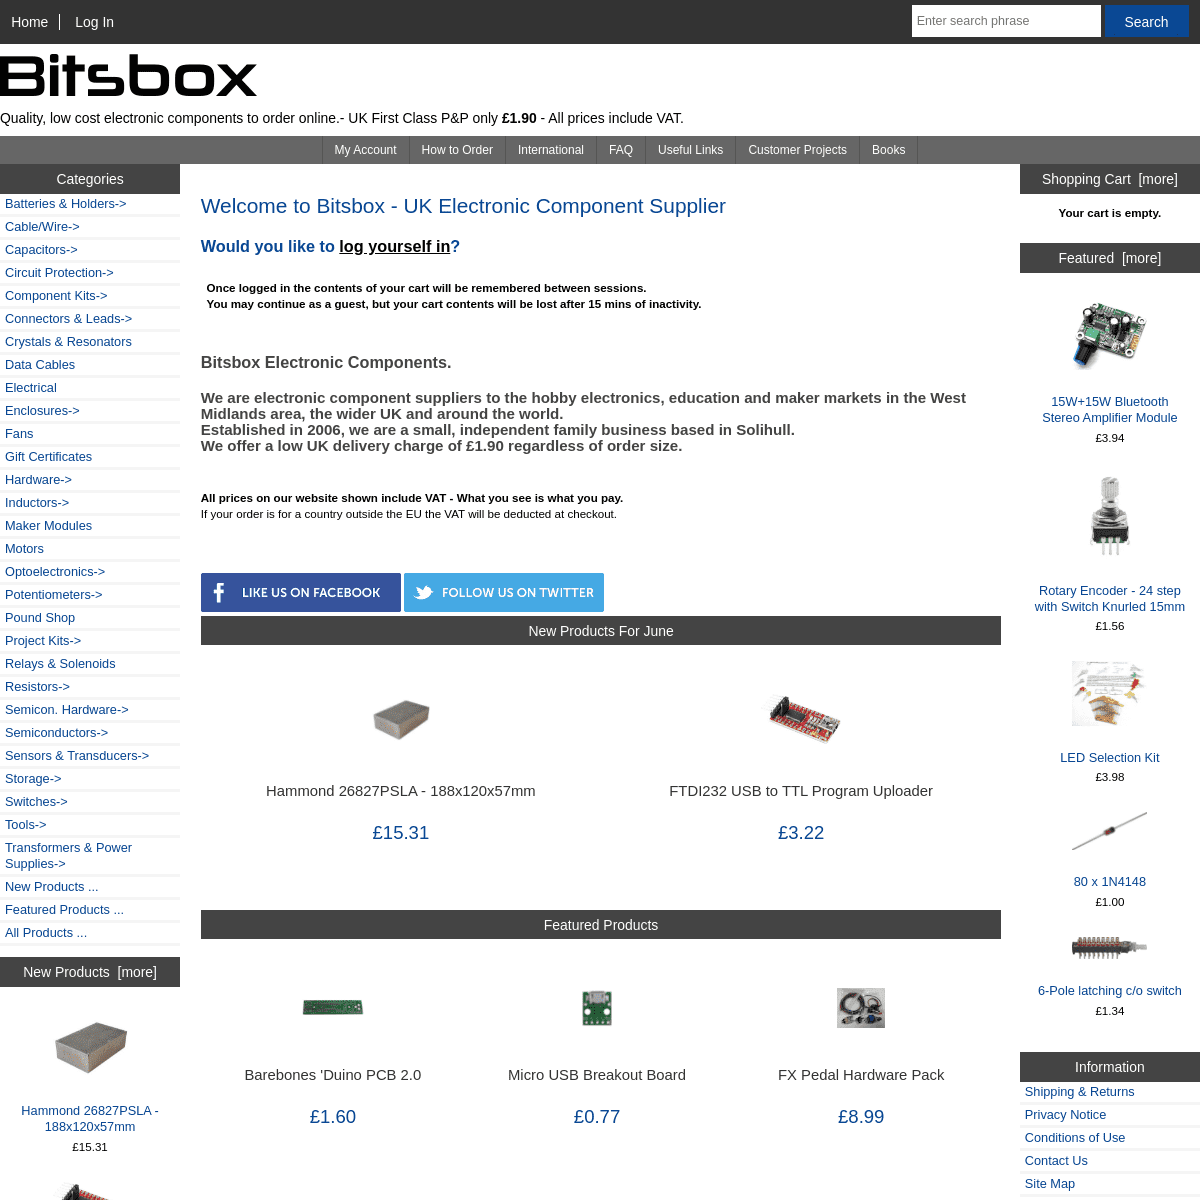 A complete backup of https://bitsbox.co.uk